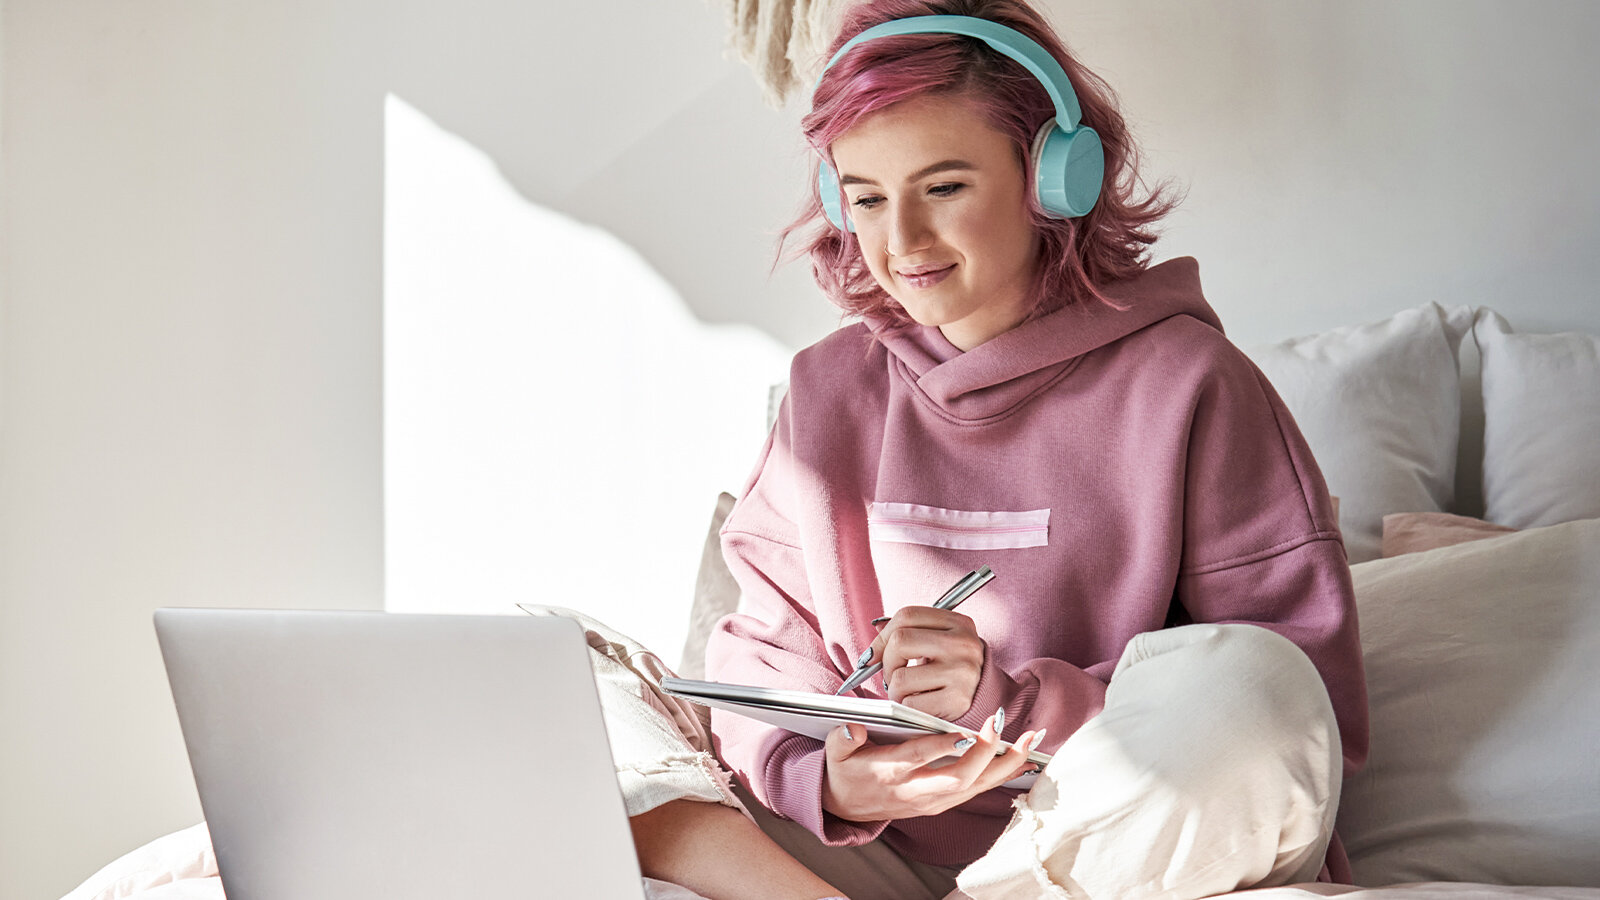 Eine junge Frau mit Kopfhörern sitzt mit einem Laptop vor sich auf dem Bett